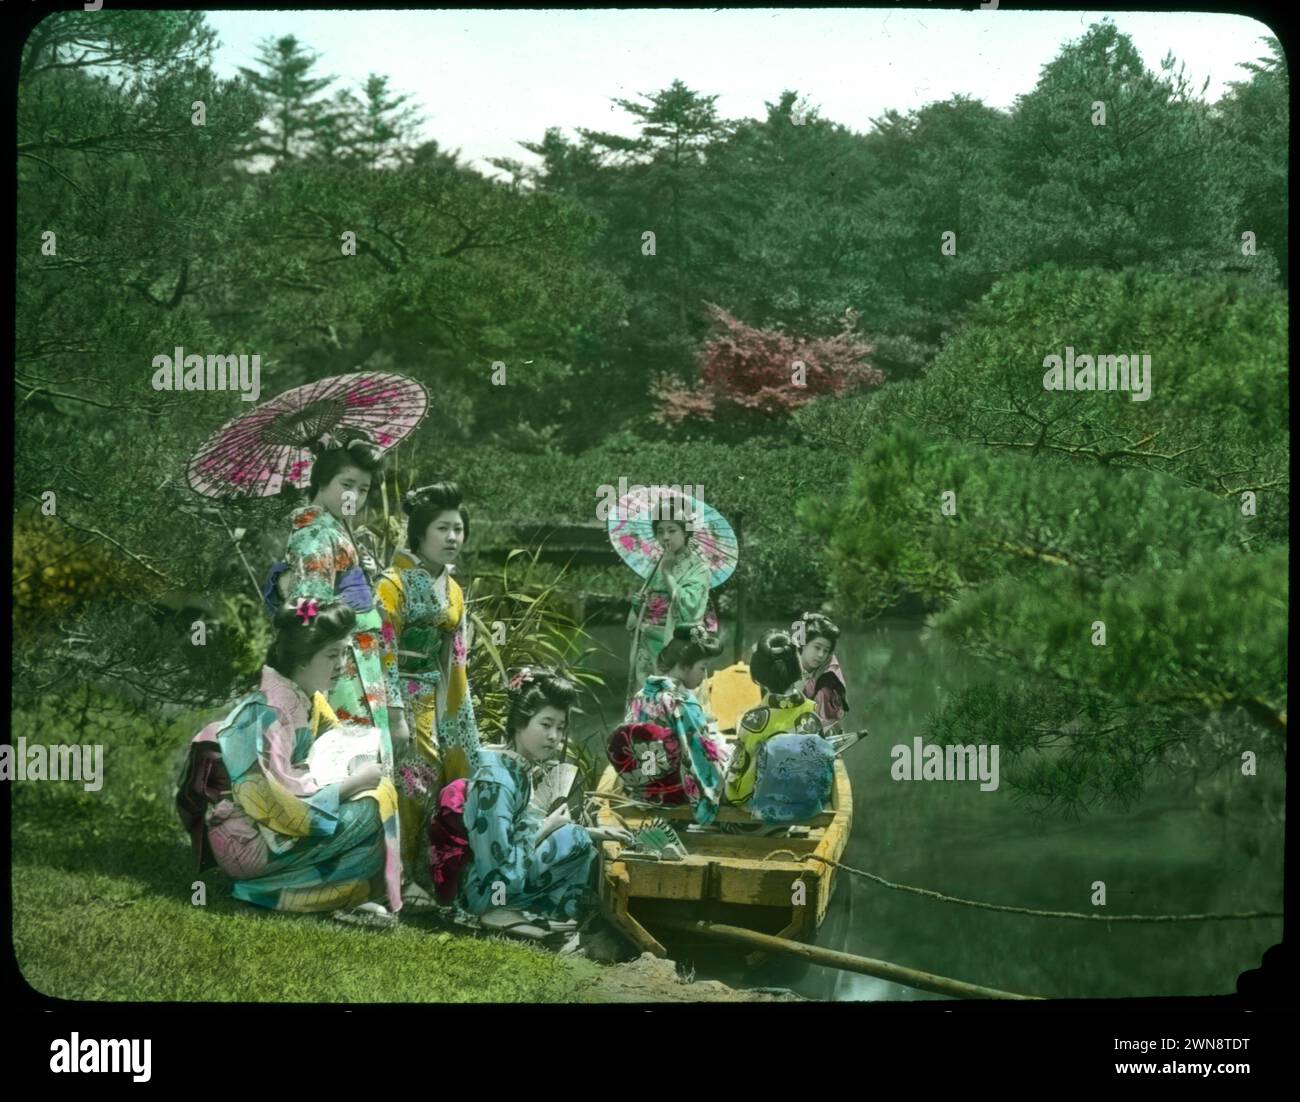 Aus Hebert Geddes 'Life in Japan' Kollektion: Handfarbige Vintage-Glasfolien aus der Meiji-Ära. Yokohama, Japan Ende des 19. Jahrhunderts. Diese Bilder von verschiedenen japanischen Künstlern wurden an Besucher verkauft. Stockfoto